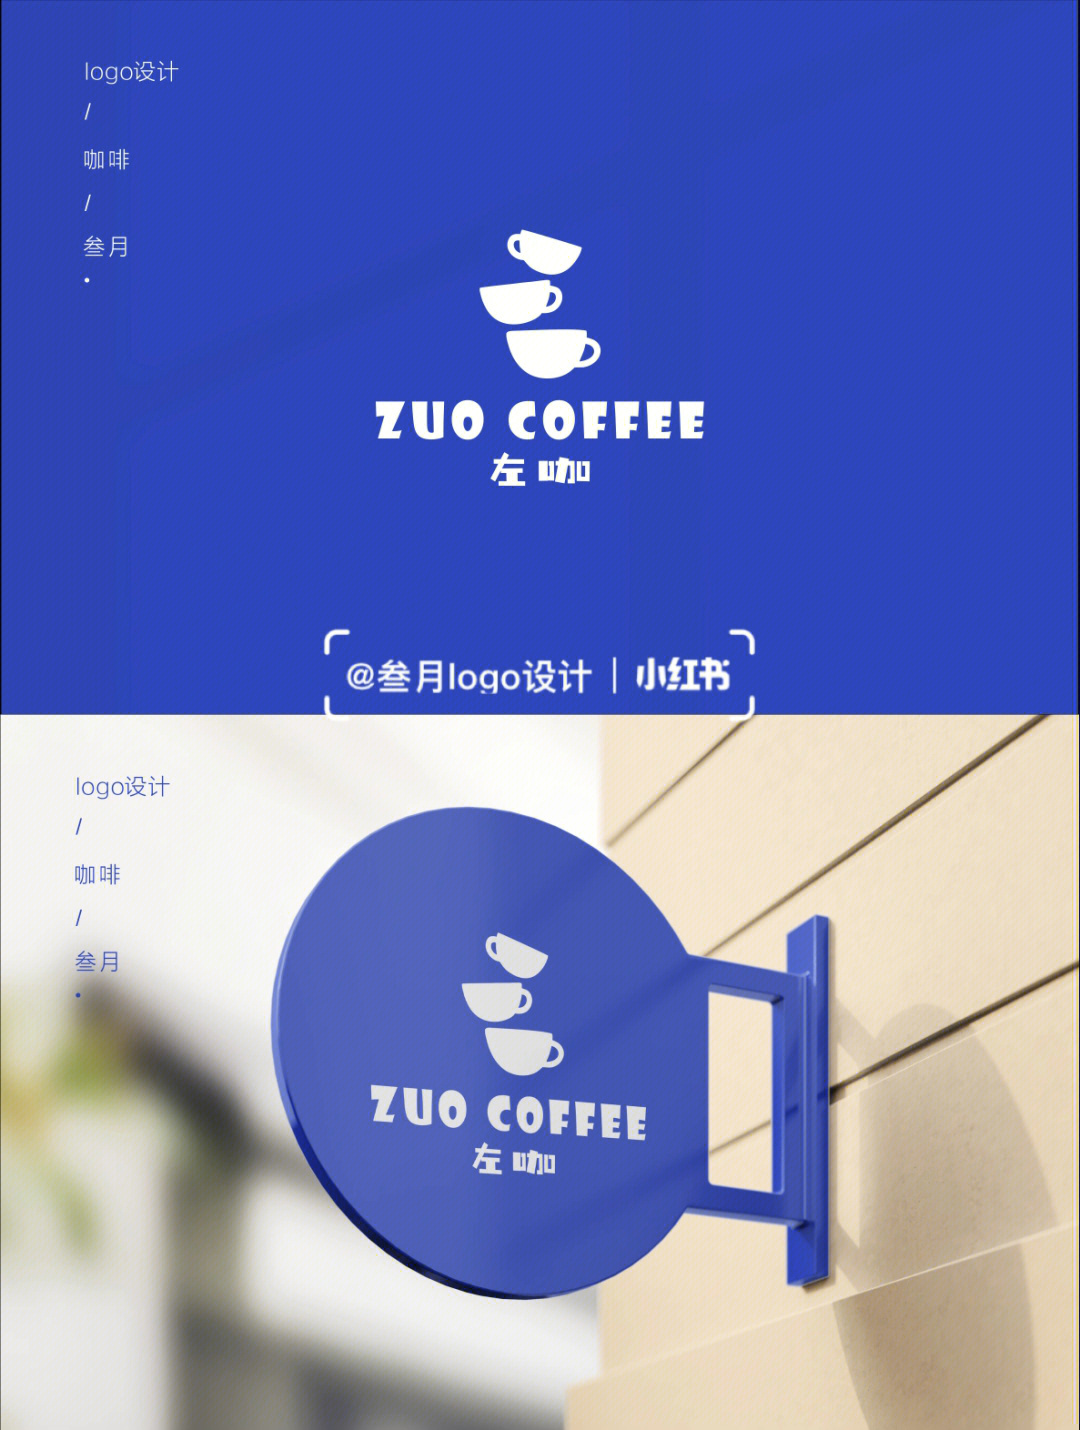 咖啡店logo设计咖啡品牌logo设计分享